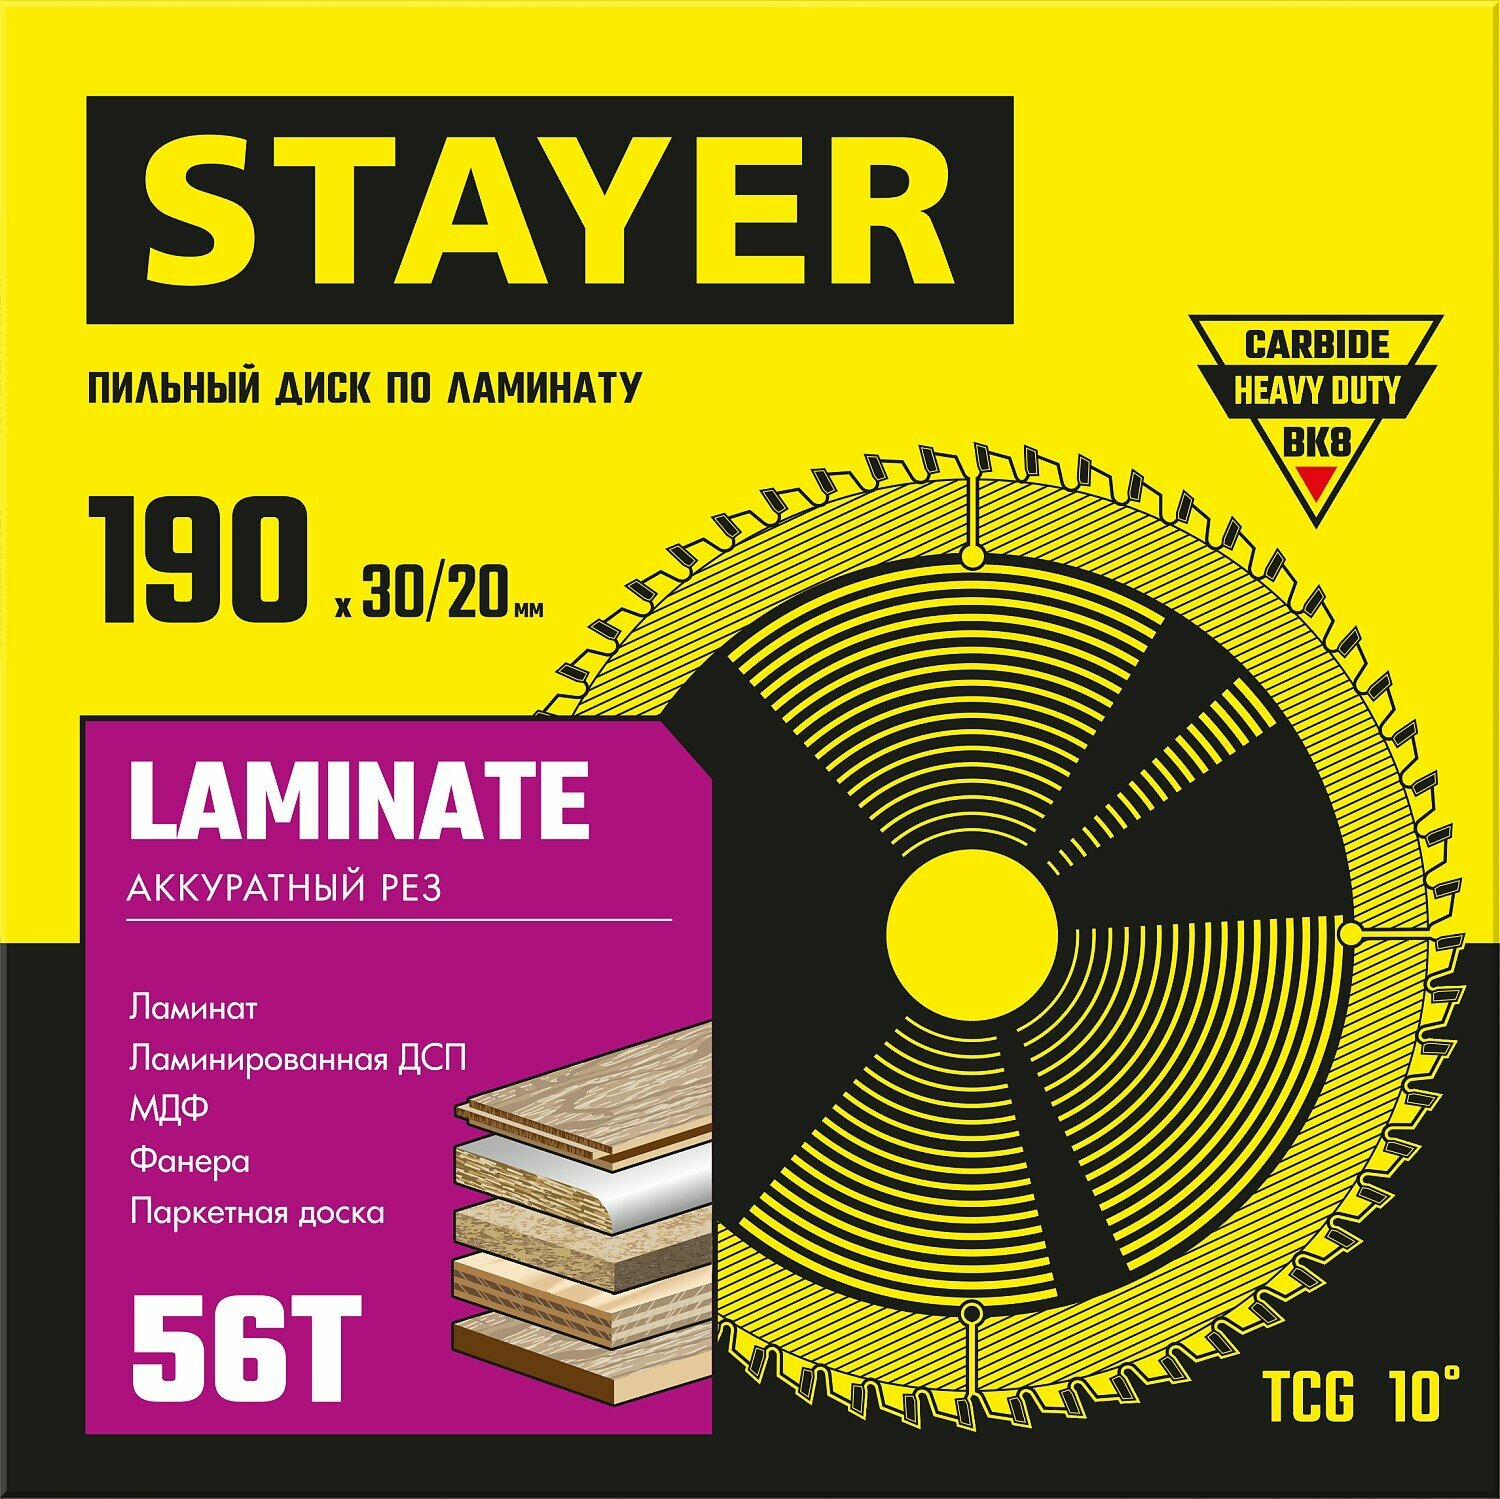 STAYER LAMINATE 190 x 30/20мм 56T, диск пильный по ламинату, аккуратный рез